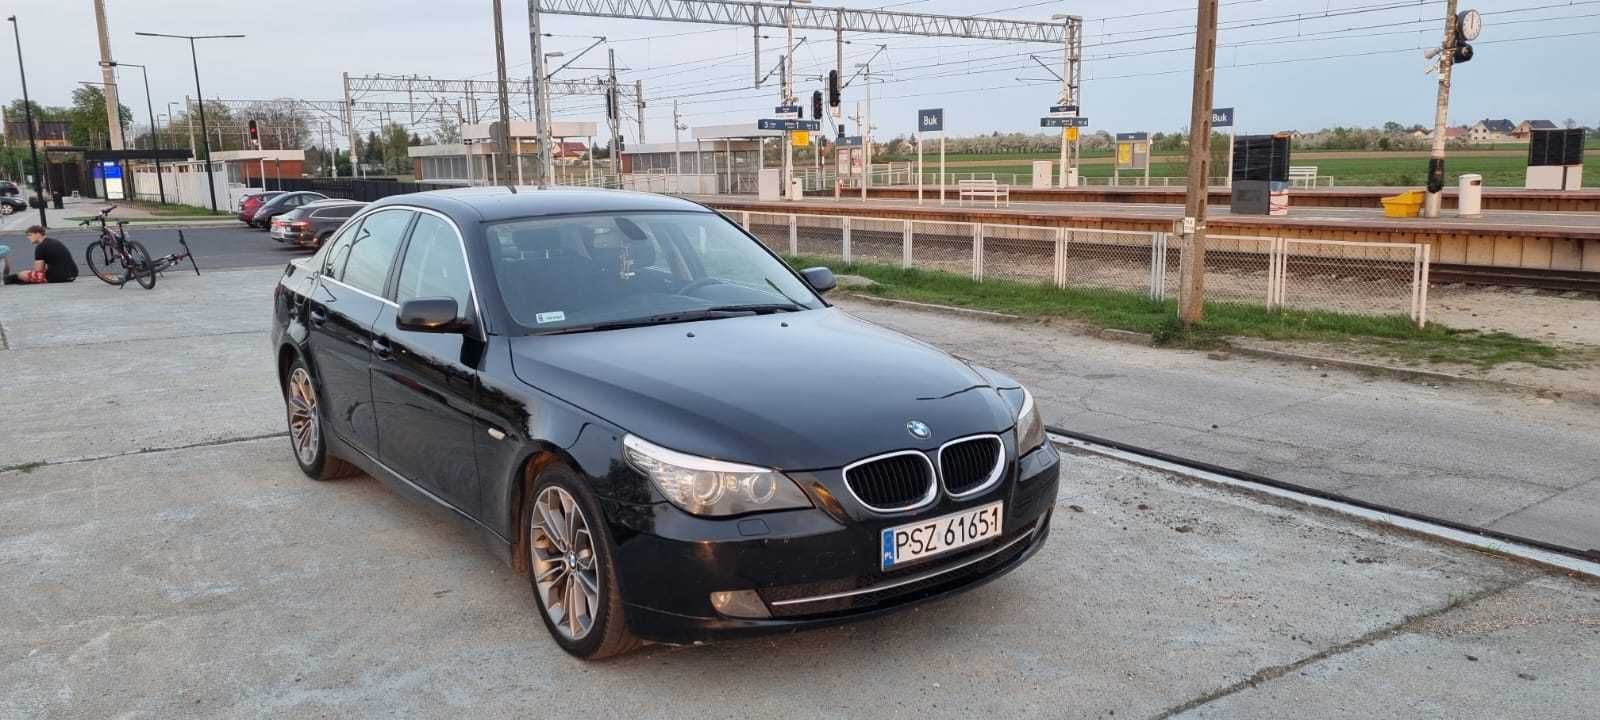 BMW 520d 2009 rok